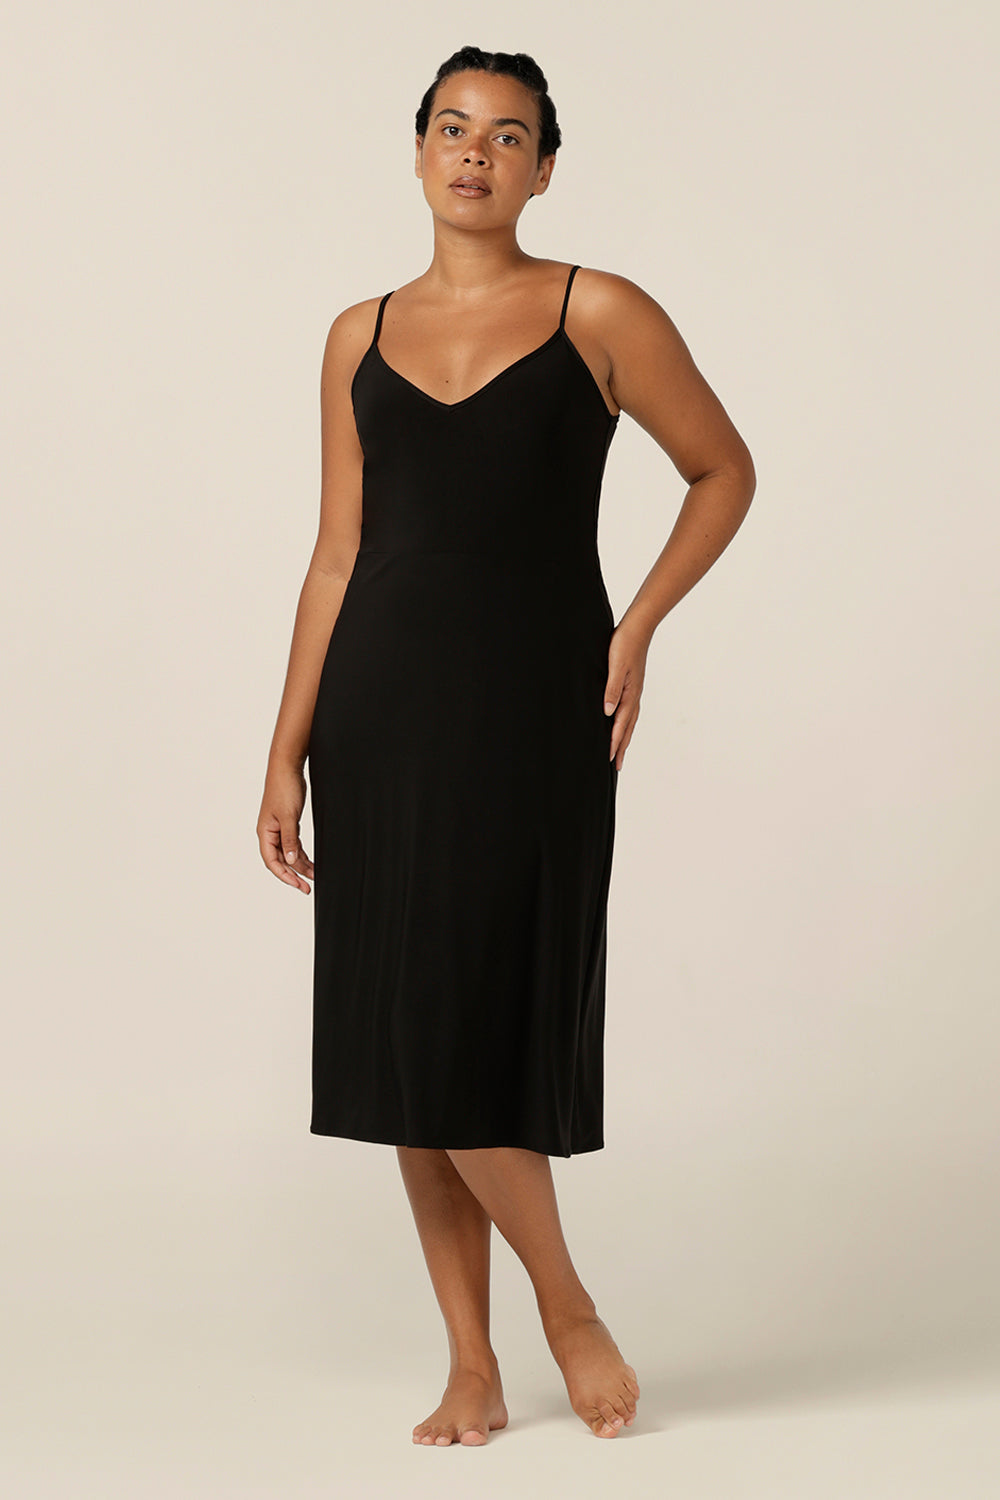 size 12 woman wears a midi-length, reversible slip in black, slinky jersey fabric. 